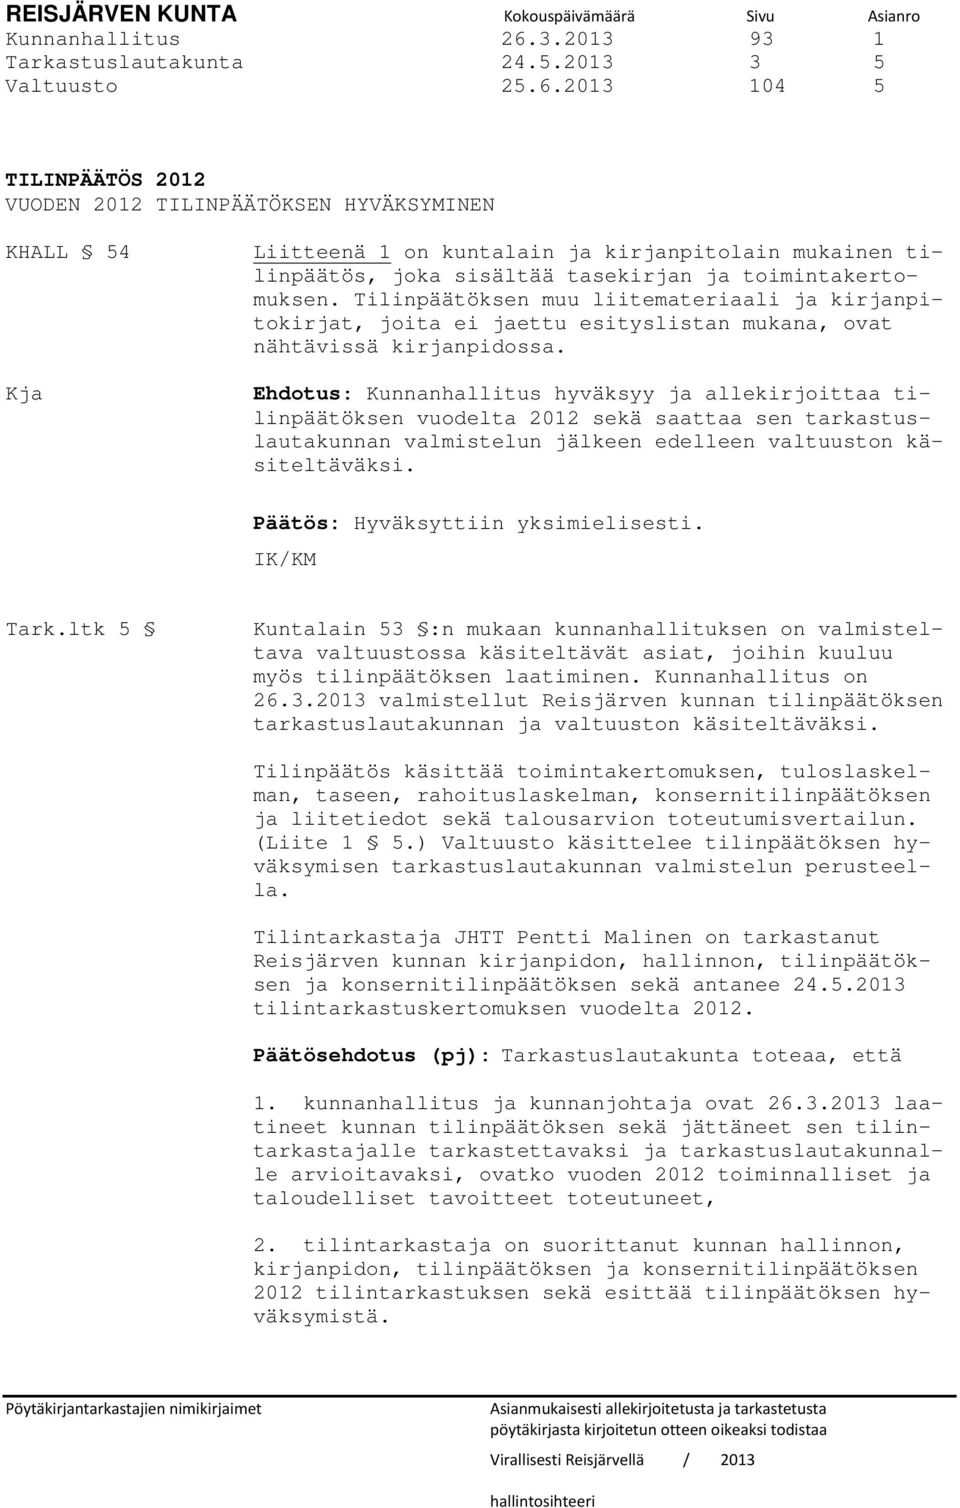 2013 104 5 TILINPÄÄTÖS 2012 VUODEN 2012 TILINPÄÄTÖKSEN HYVÄKSYMINEN KHALL 54 Kja Liitteenä 1 on kuntalain ja kirjanpitolain mukainen tilinpäätös, joka sisältää tasekirjan ja toimintakertomuksen.